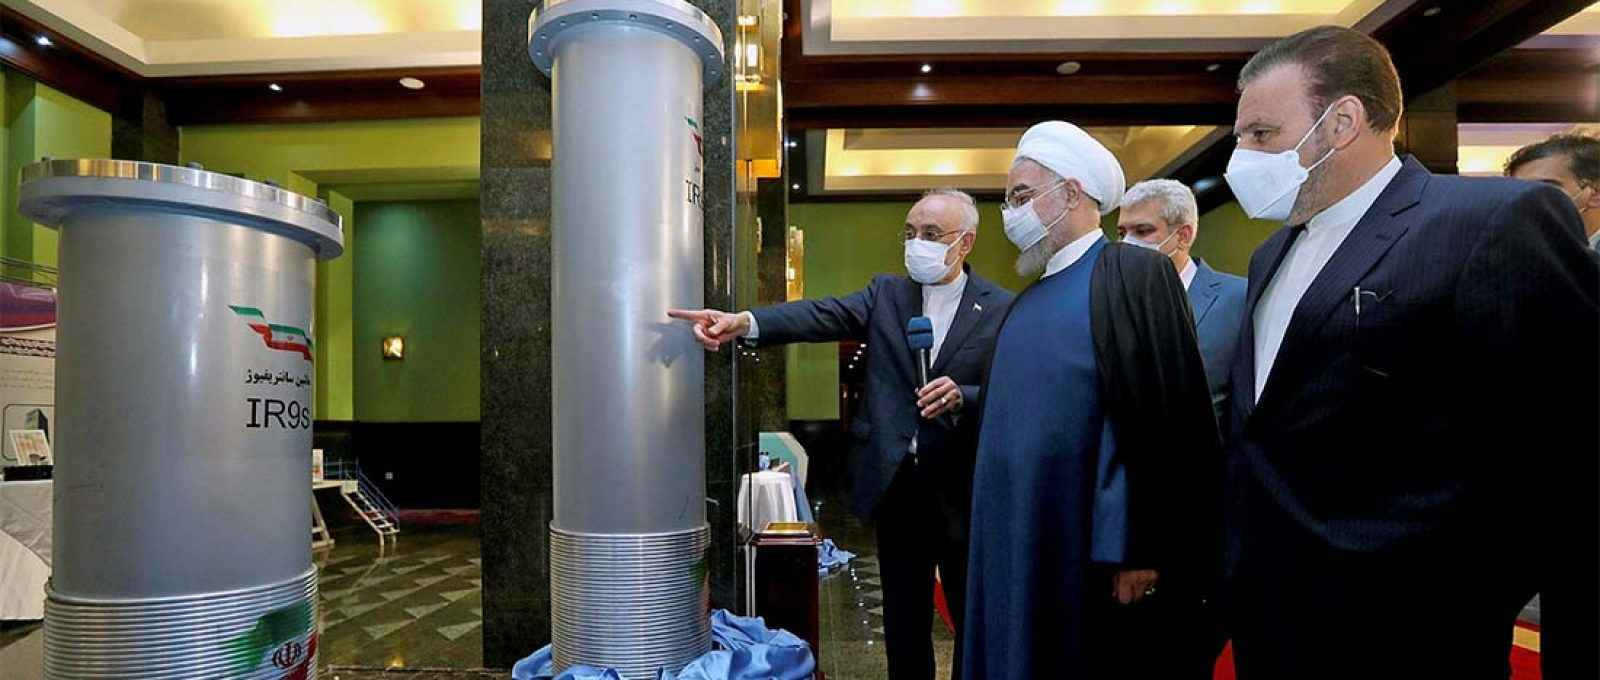 O então presidente do Irã, Hassan Rouhani, em visita a uma exposição sobre as realizações nucleares do país em Teerã, em abril de 2021 (AP).